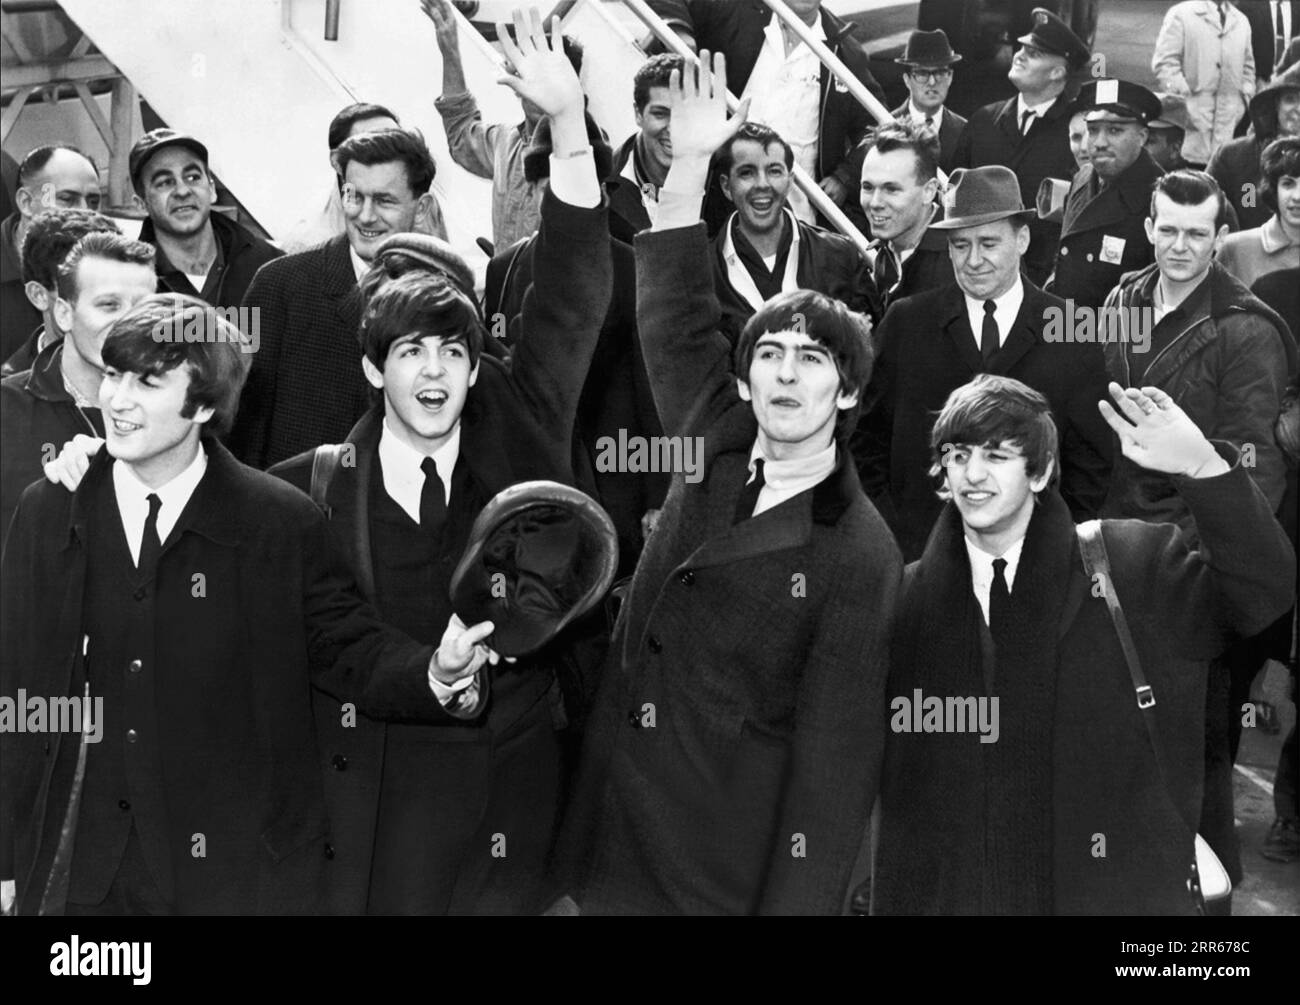 Les Beatles arrivent à l'aéroport Kennedy de New York le 7 février 1964, pour leur première visite aux États-Unis. (ÉTATS-UNIS) Banque D'Images